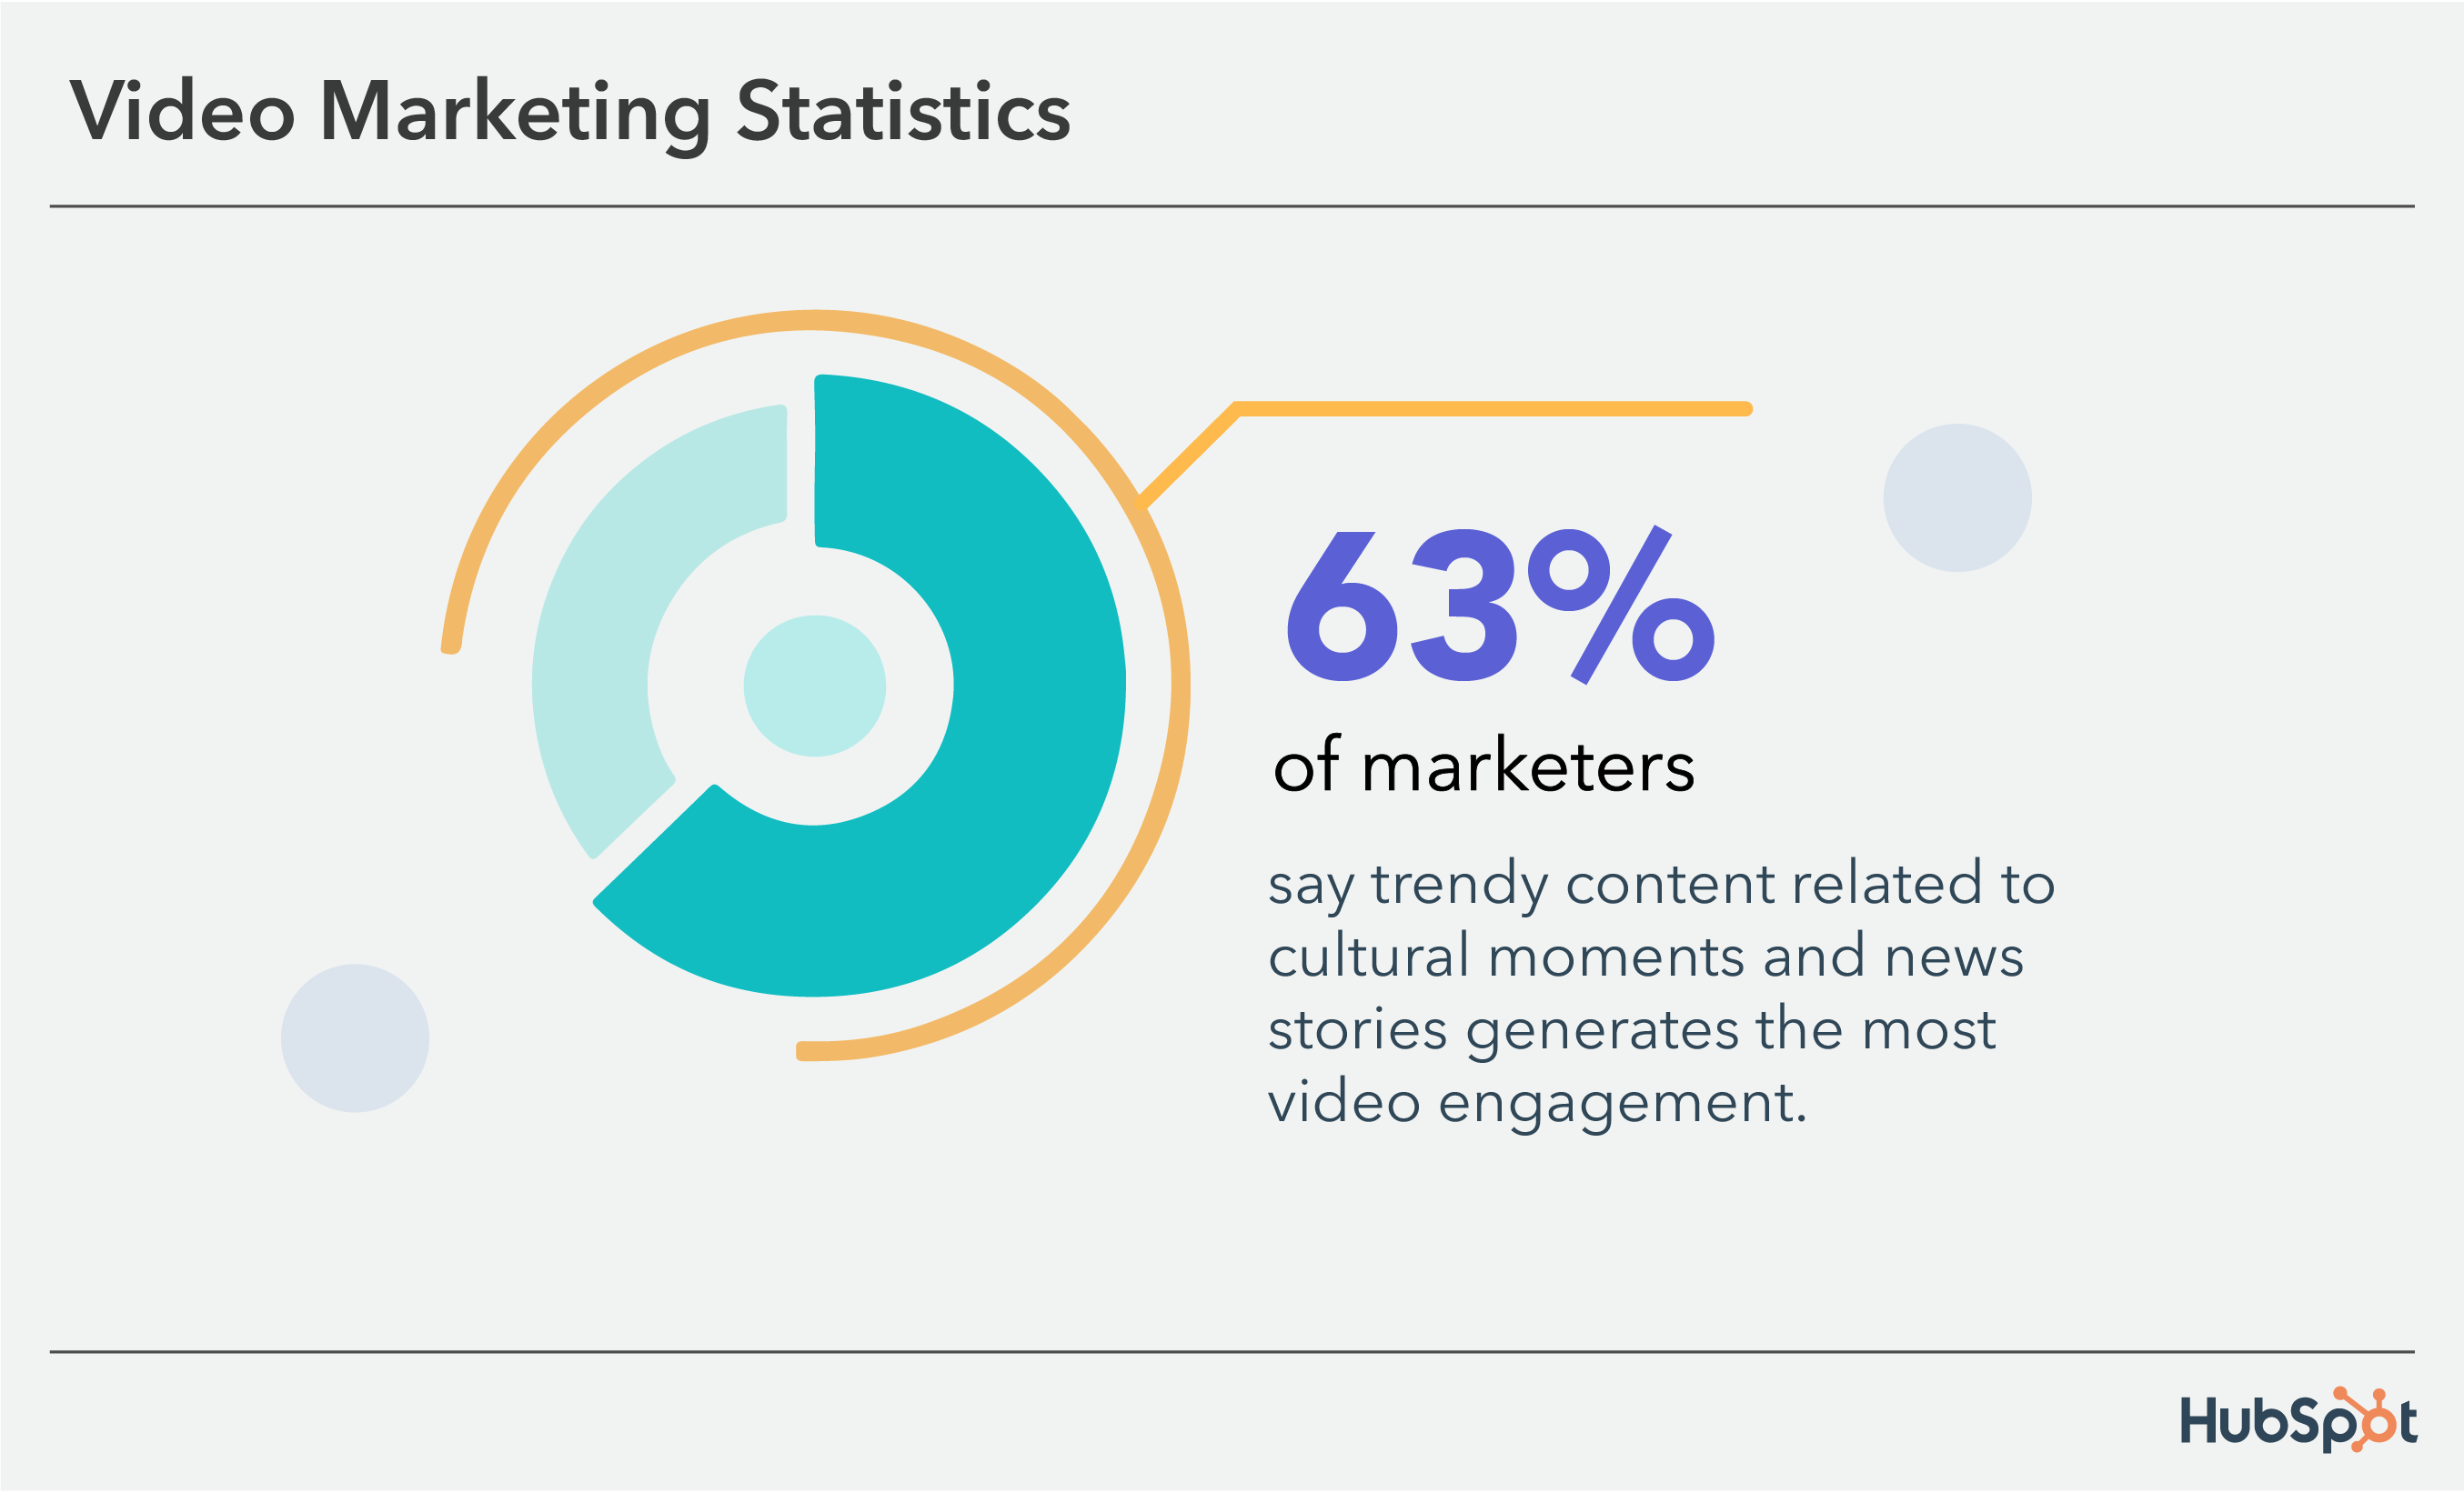 آمار بازاریابی ویدیویی: 63 درصد از بازاریابان می گویند محتوای مد روز بیشترین میزان تعامل ویدیویی را دارد